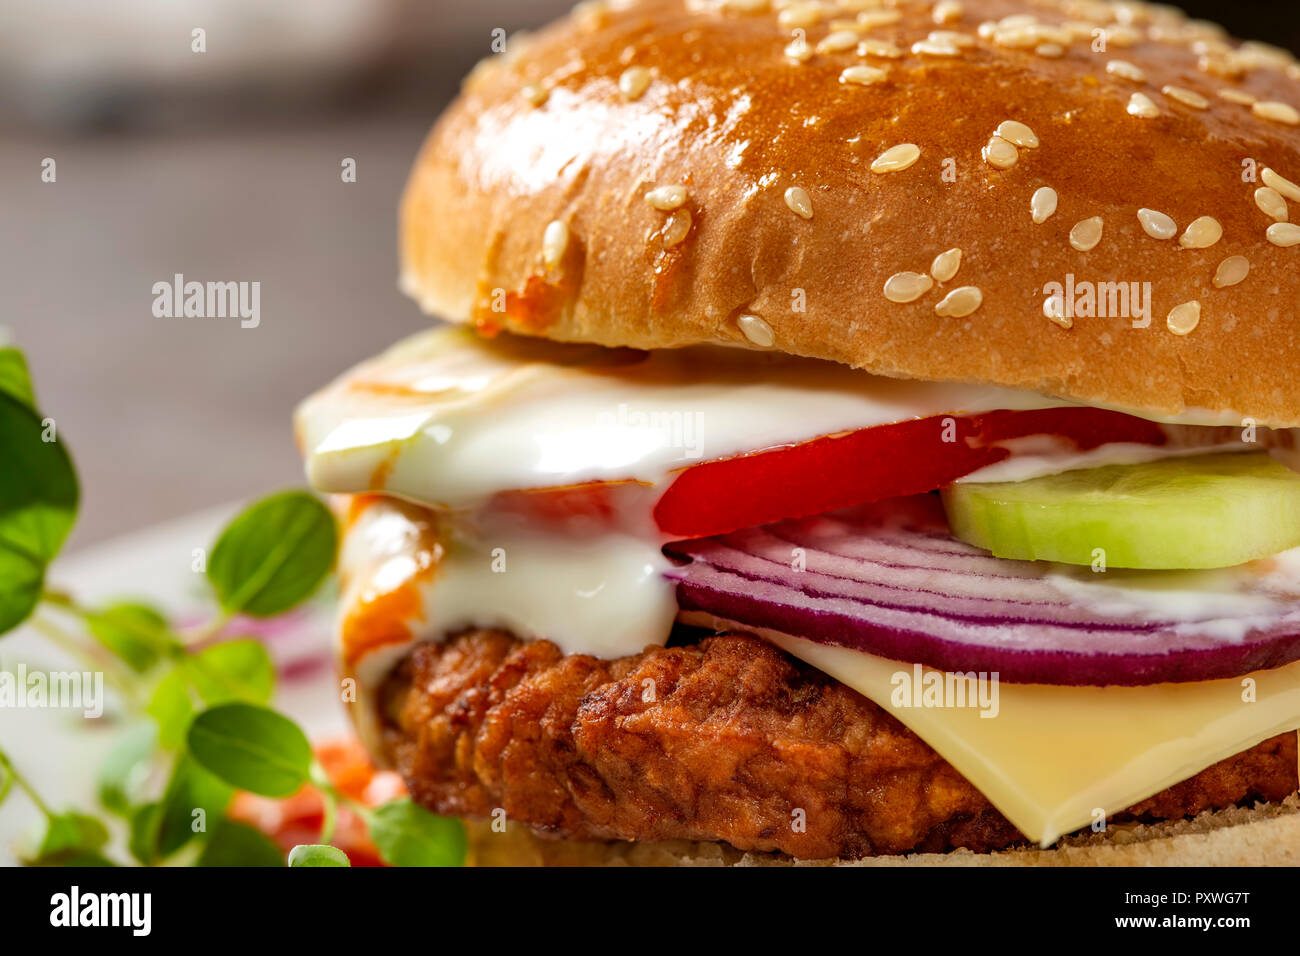 Selbstgemachte Cheeseburger mit Tomatensauce und Ketchup - Nähe zu sehen. Stockfoto